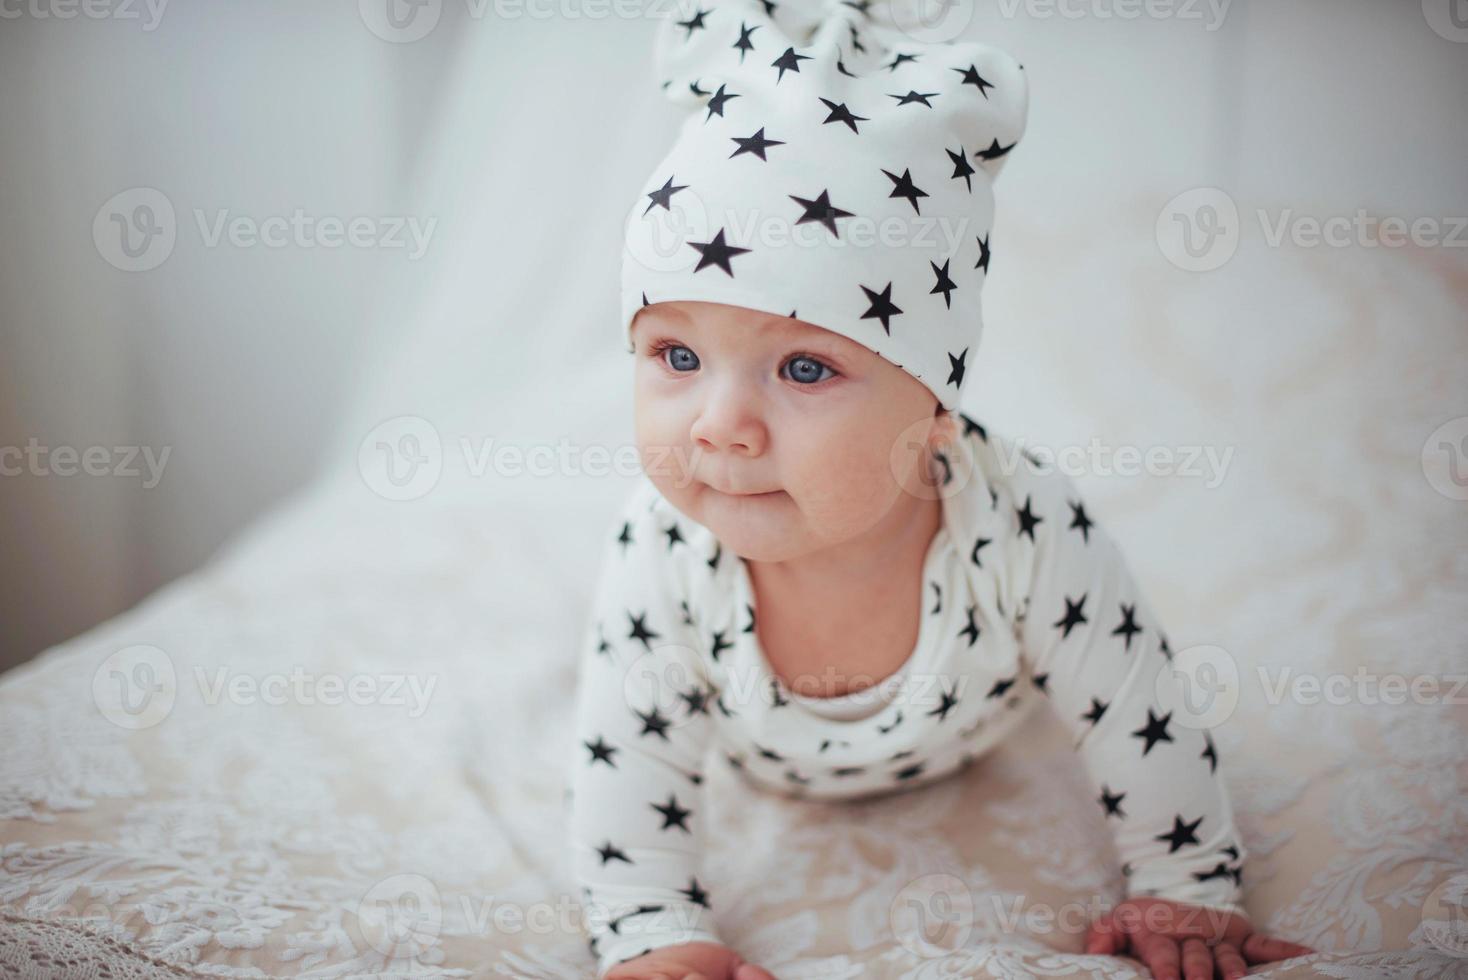 bebê recém-nascido vestido com um terno branco e estrelas negras é uma cama macia branca no estúdio foto